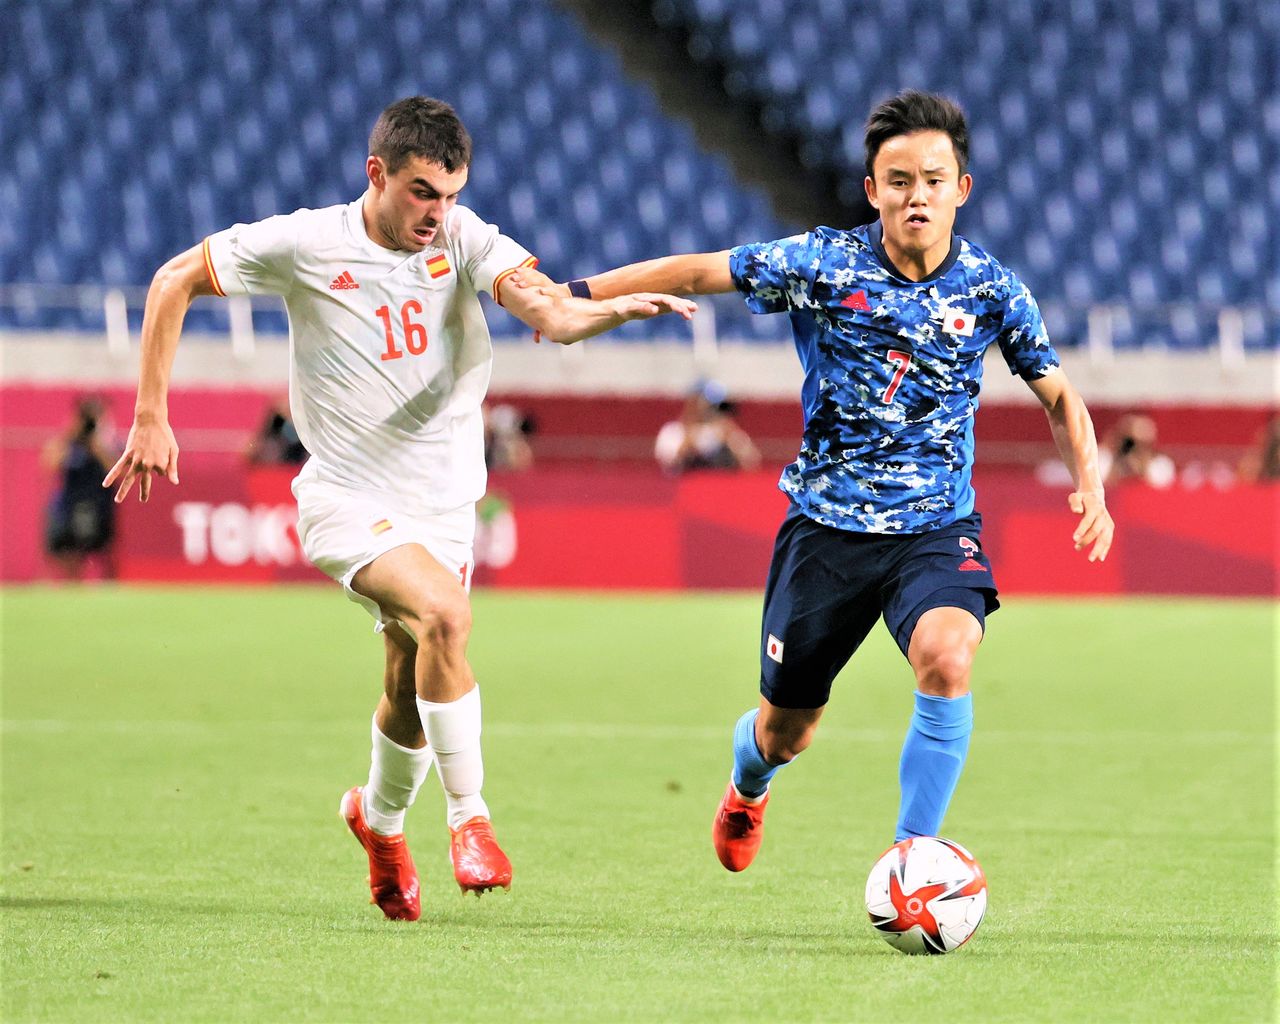 الياباني كوبو تاكيفوسا، إلى اليمين، في صراع على الكرة مع النجم الإسباني الشاب بيدري في نصف نهائي منافسات كرة القدم الأولمبية للرجال في الثالث من أغسطس/ آب 2021. (جيجي برس)